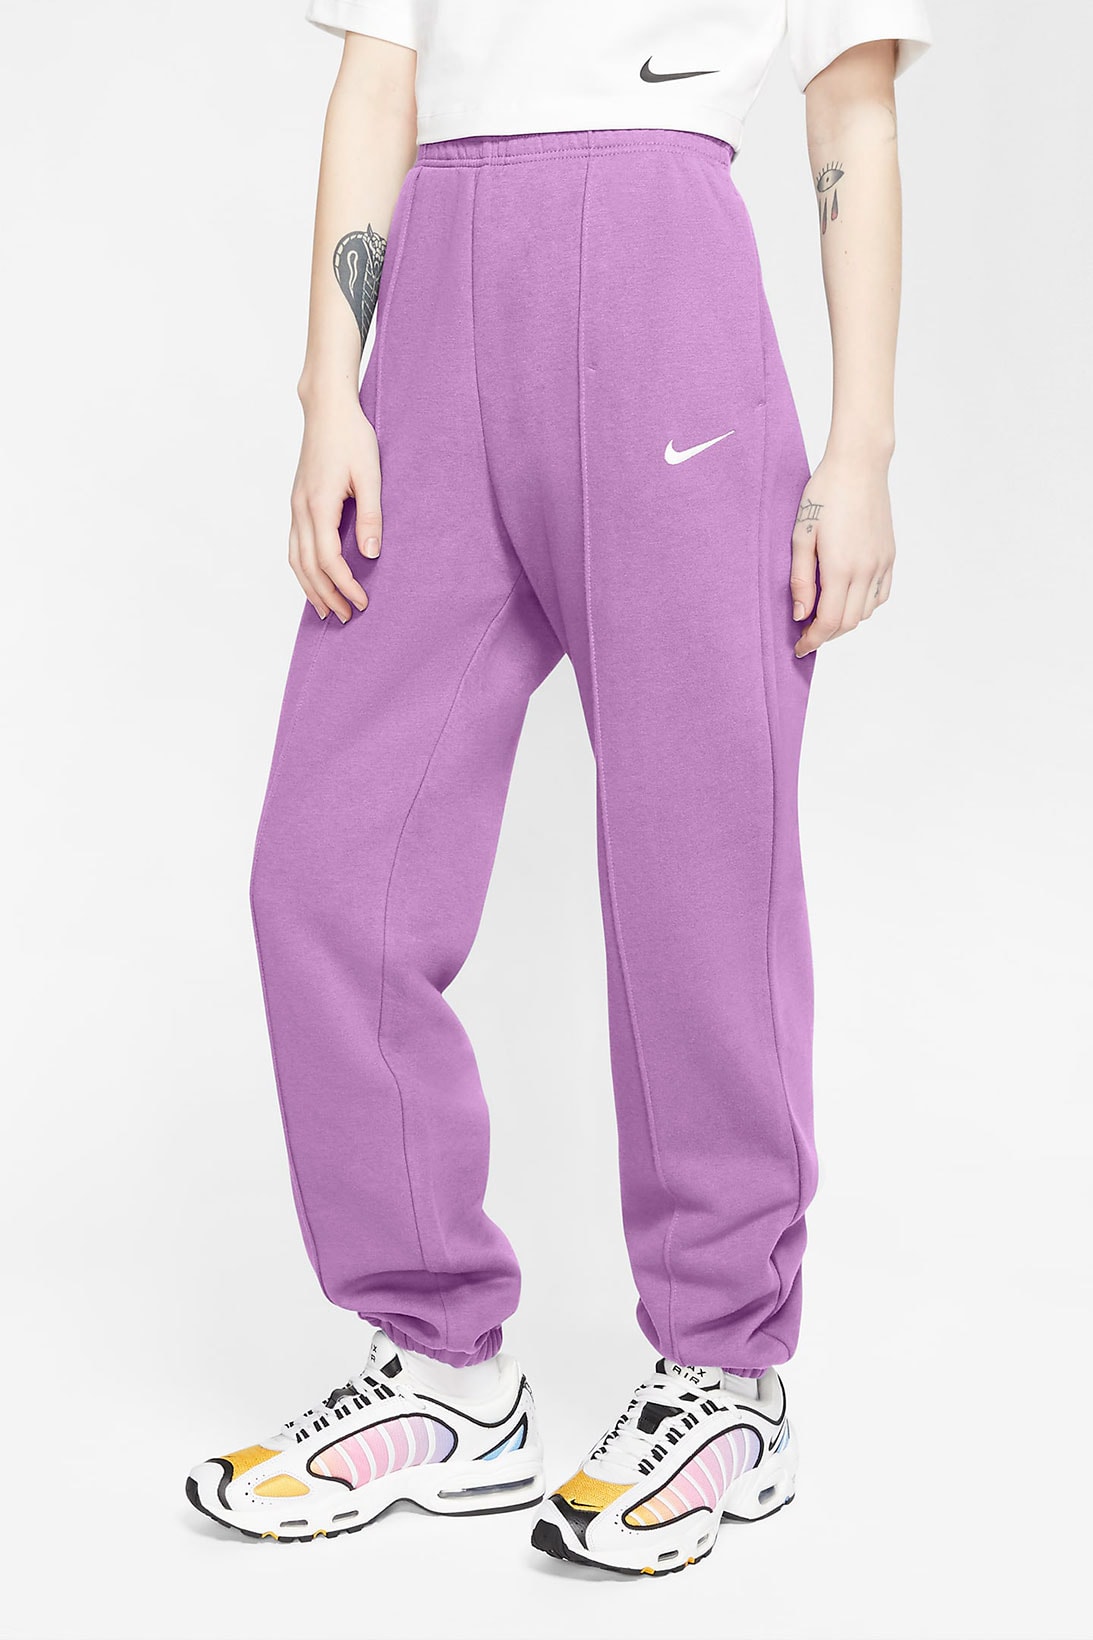 nike sportswear womens fleece sweatpants loungewear purple front